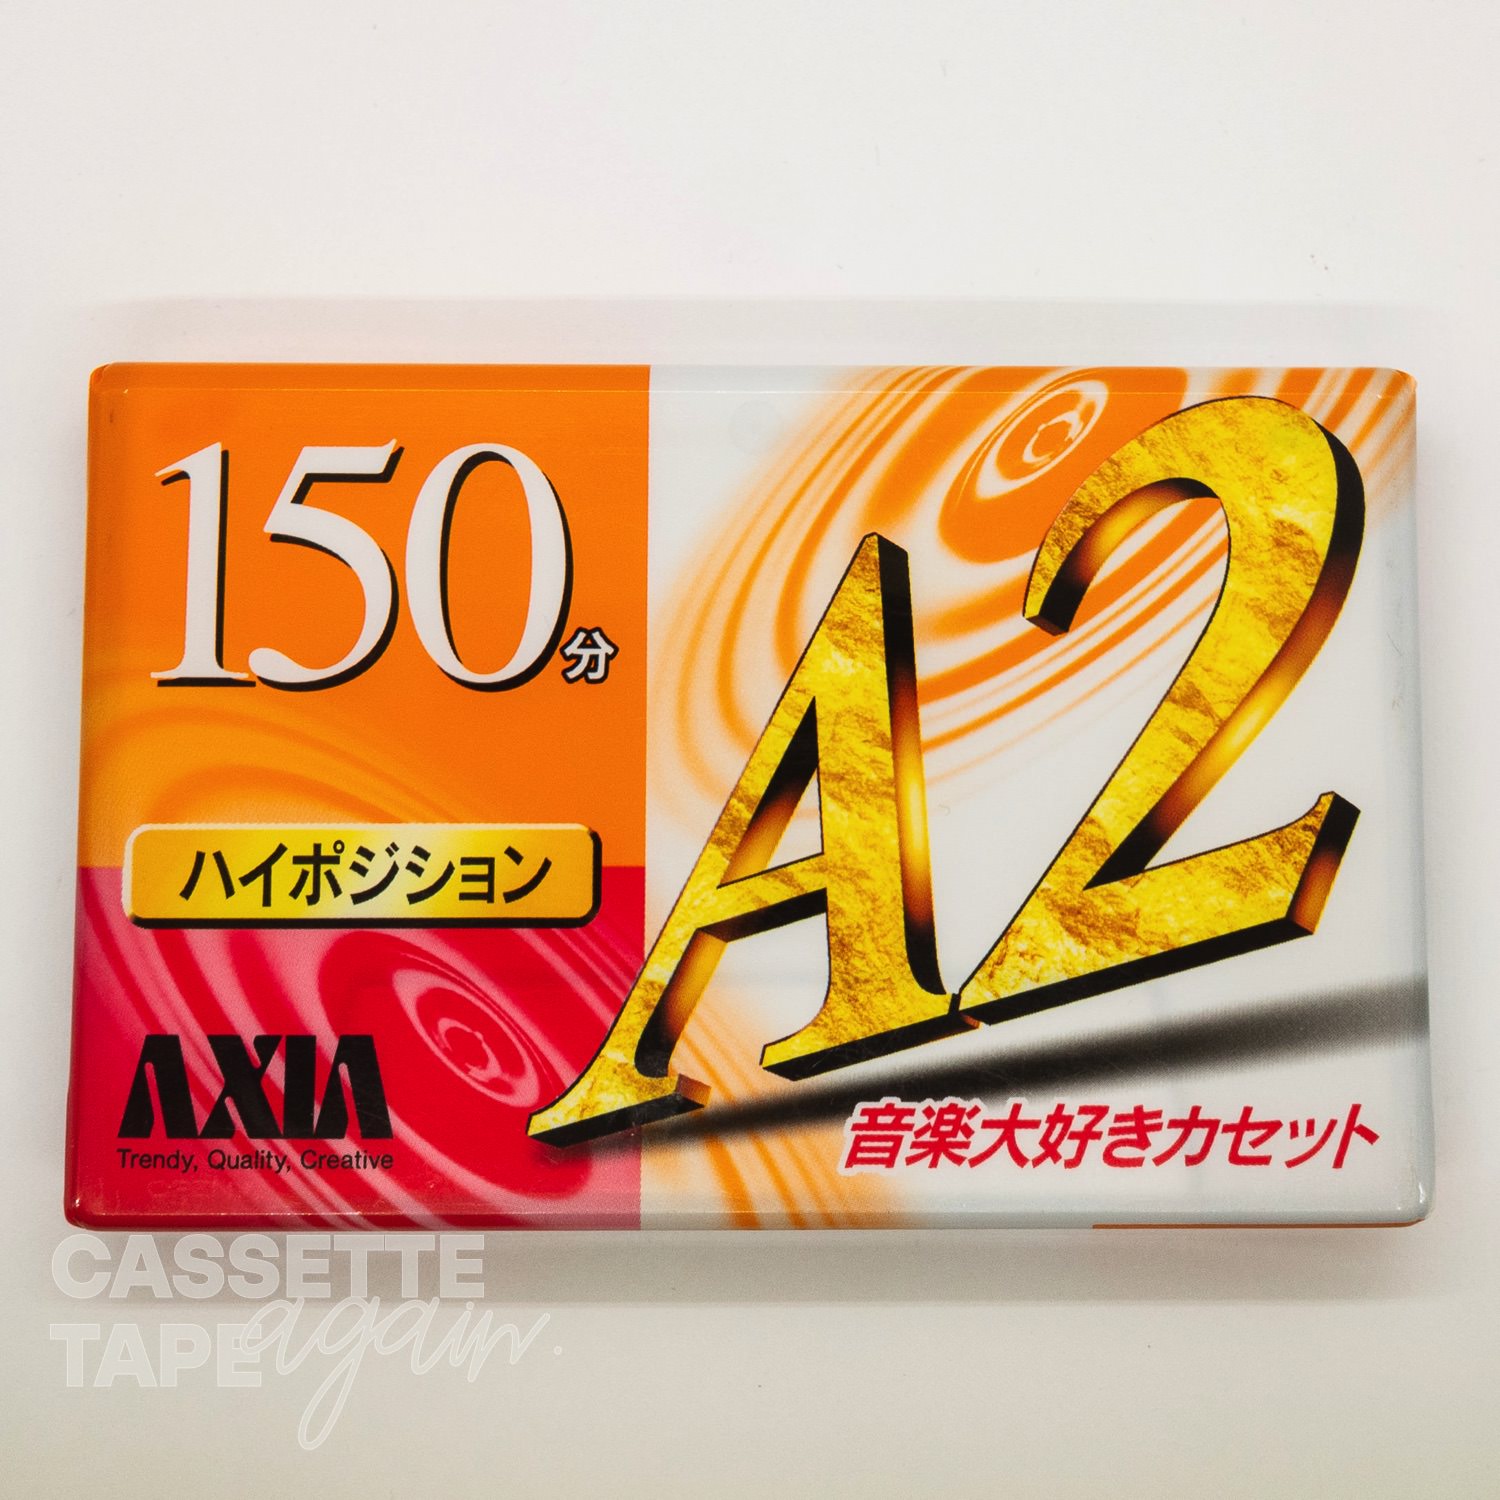 A2 150 / AXIA/FUJI(ハイポジ)